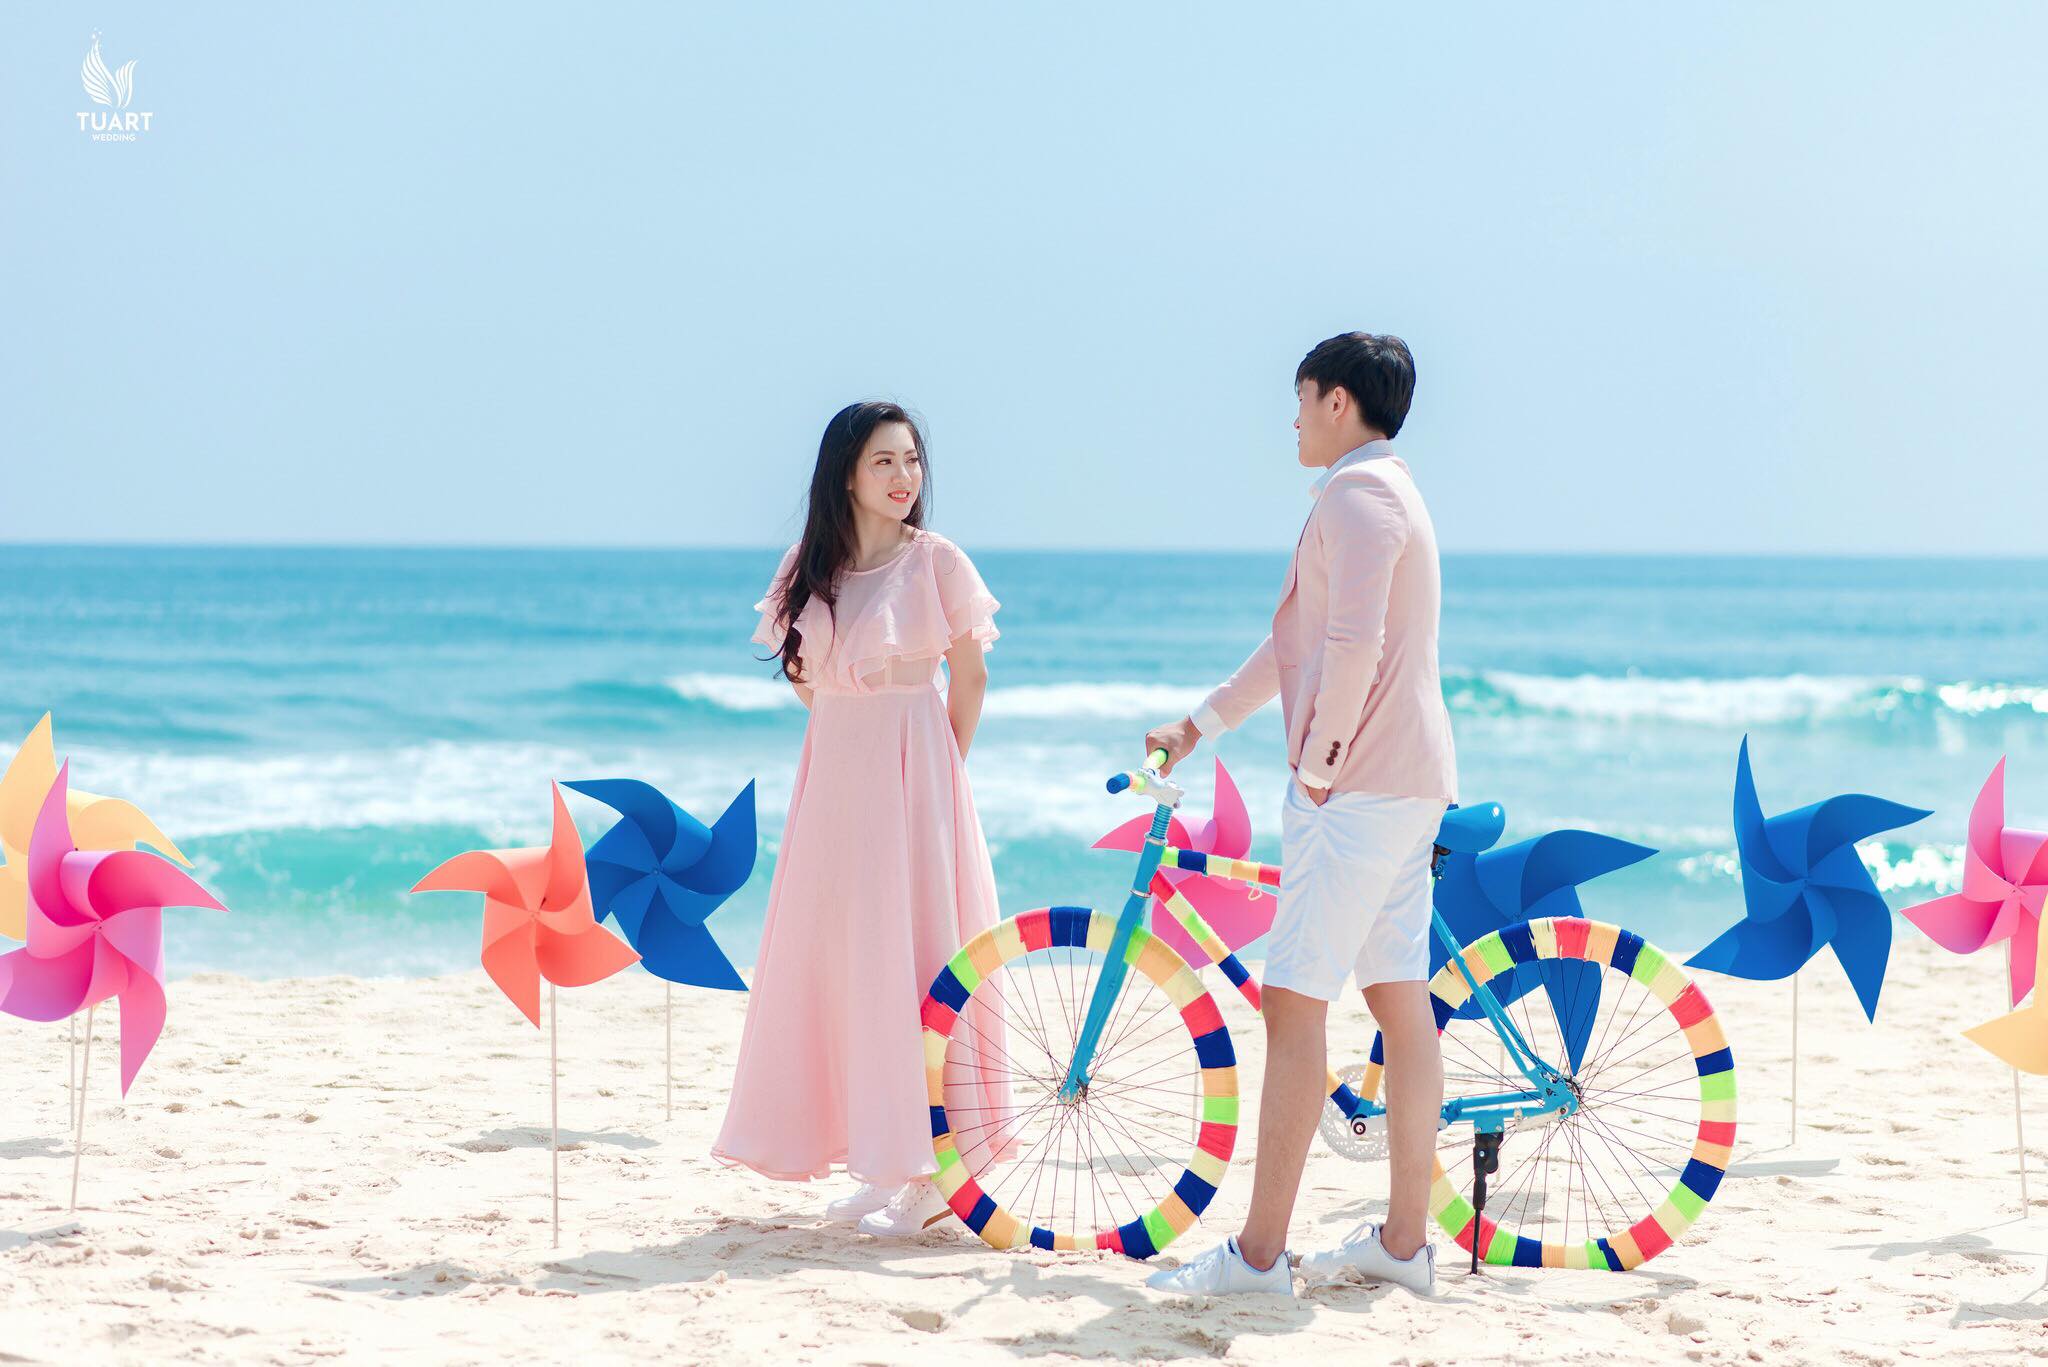 Album chụp ảnh cưới Mỹ Khê-Chong chóng quay khi trời xanh có nắng 11